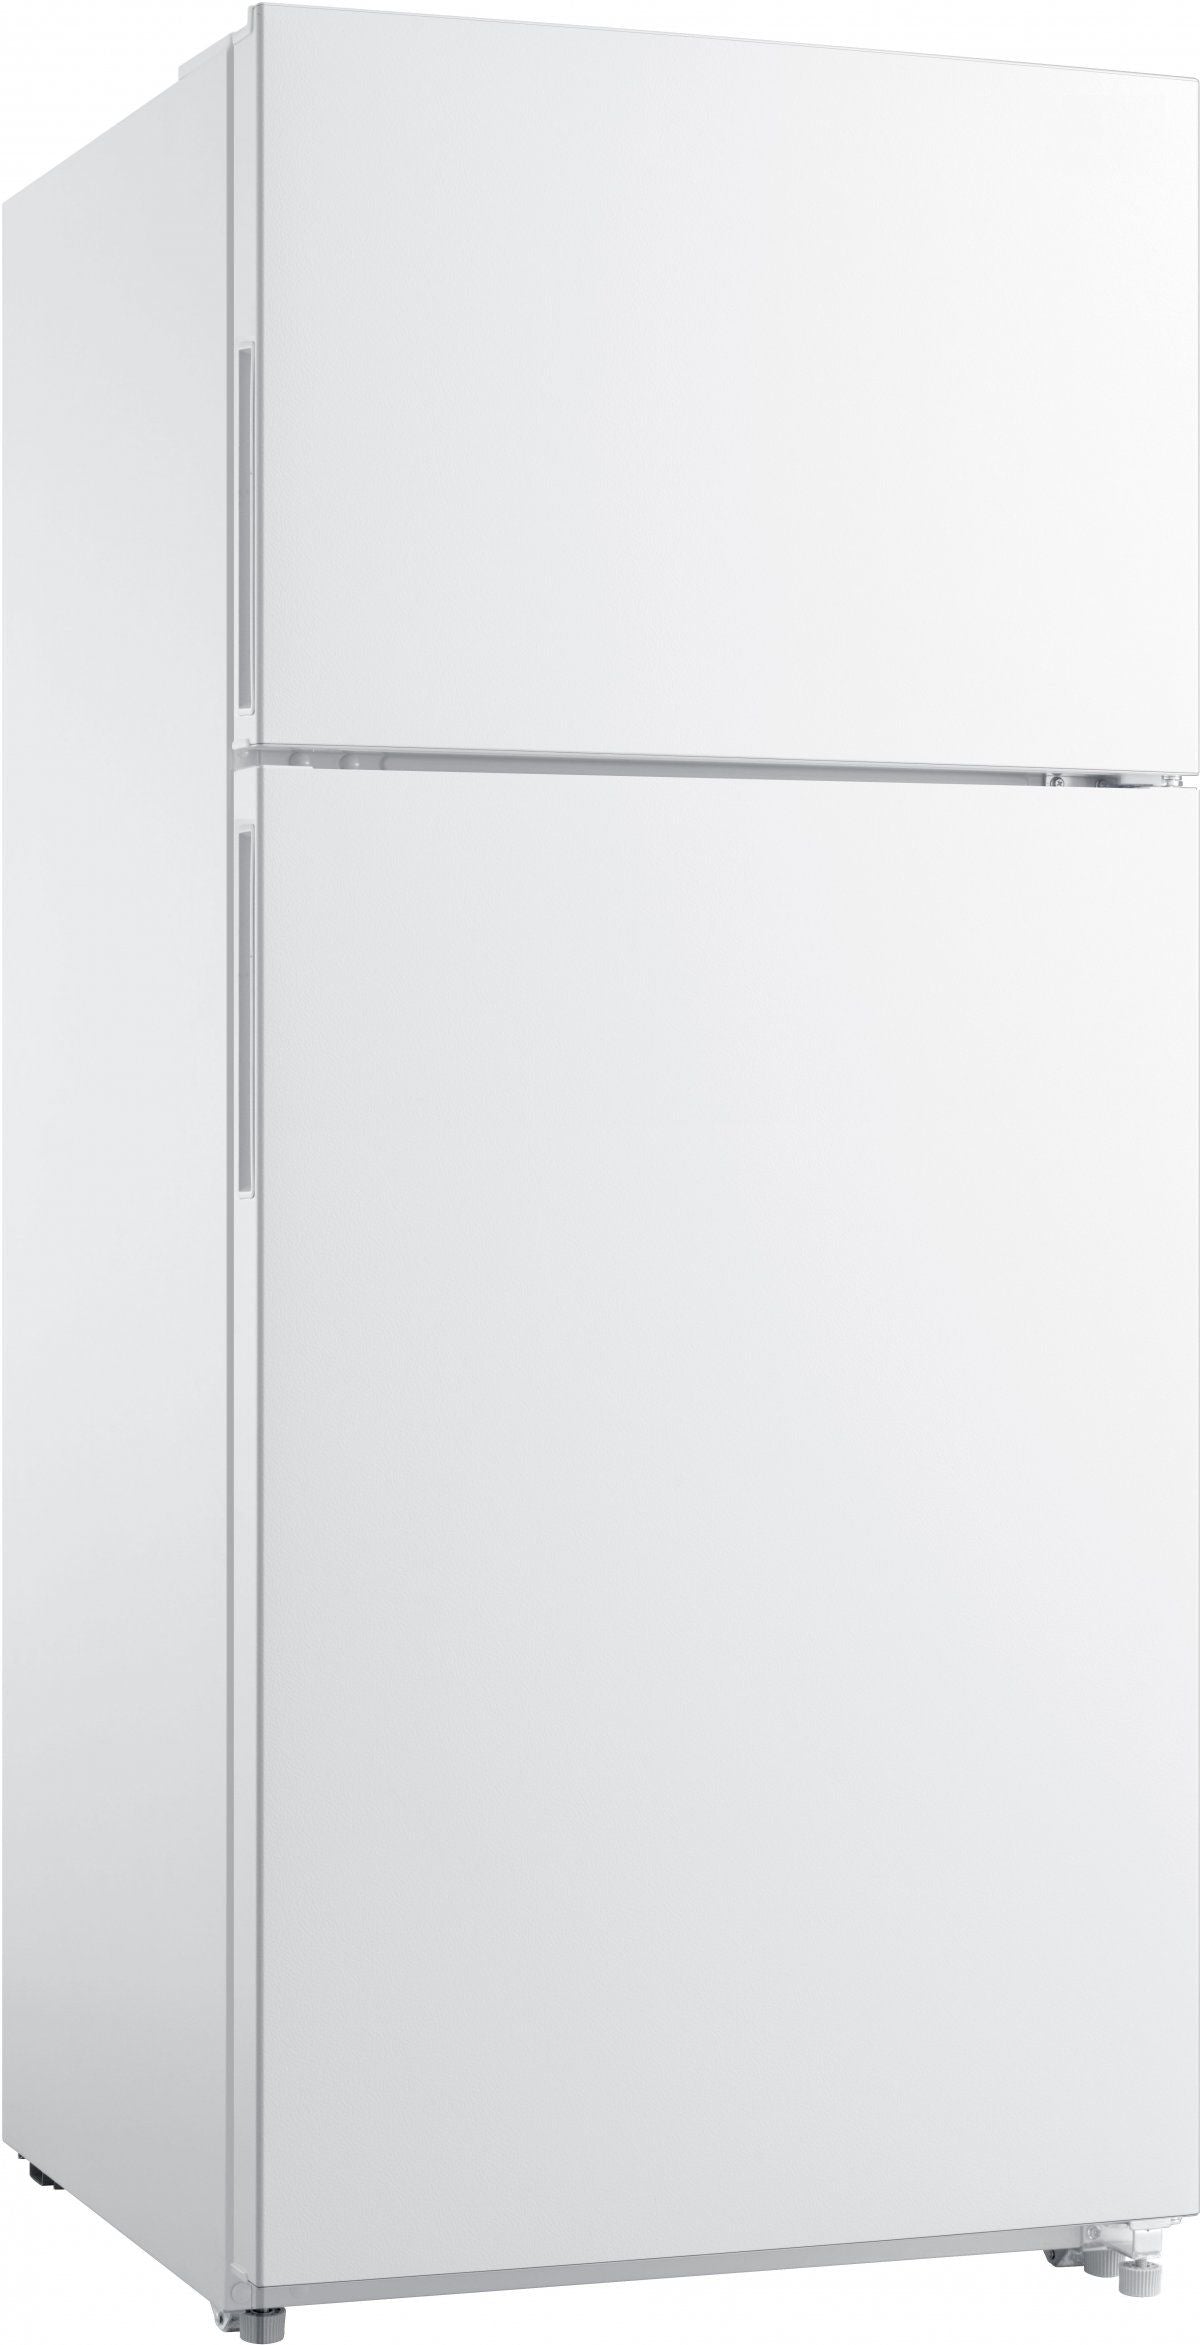 Frigidaire® 18.0 Cu. Ft. White Top Freezer Refrigerator